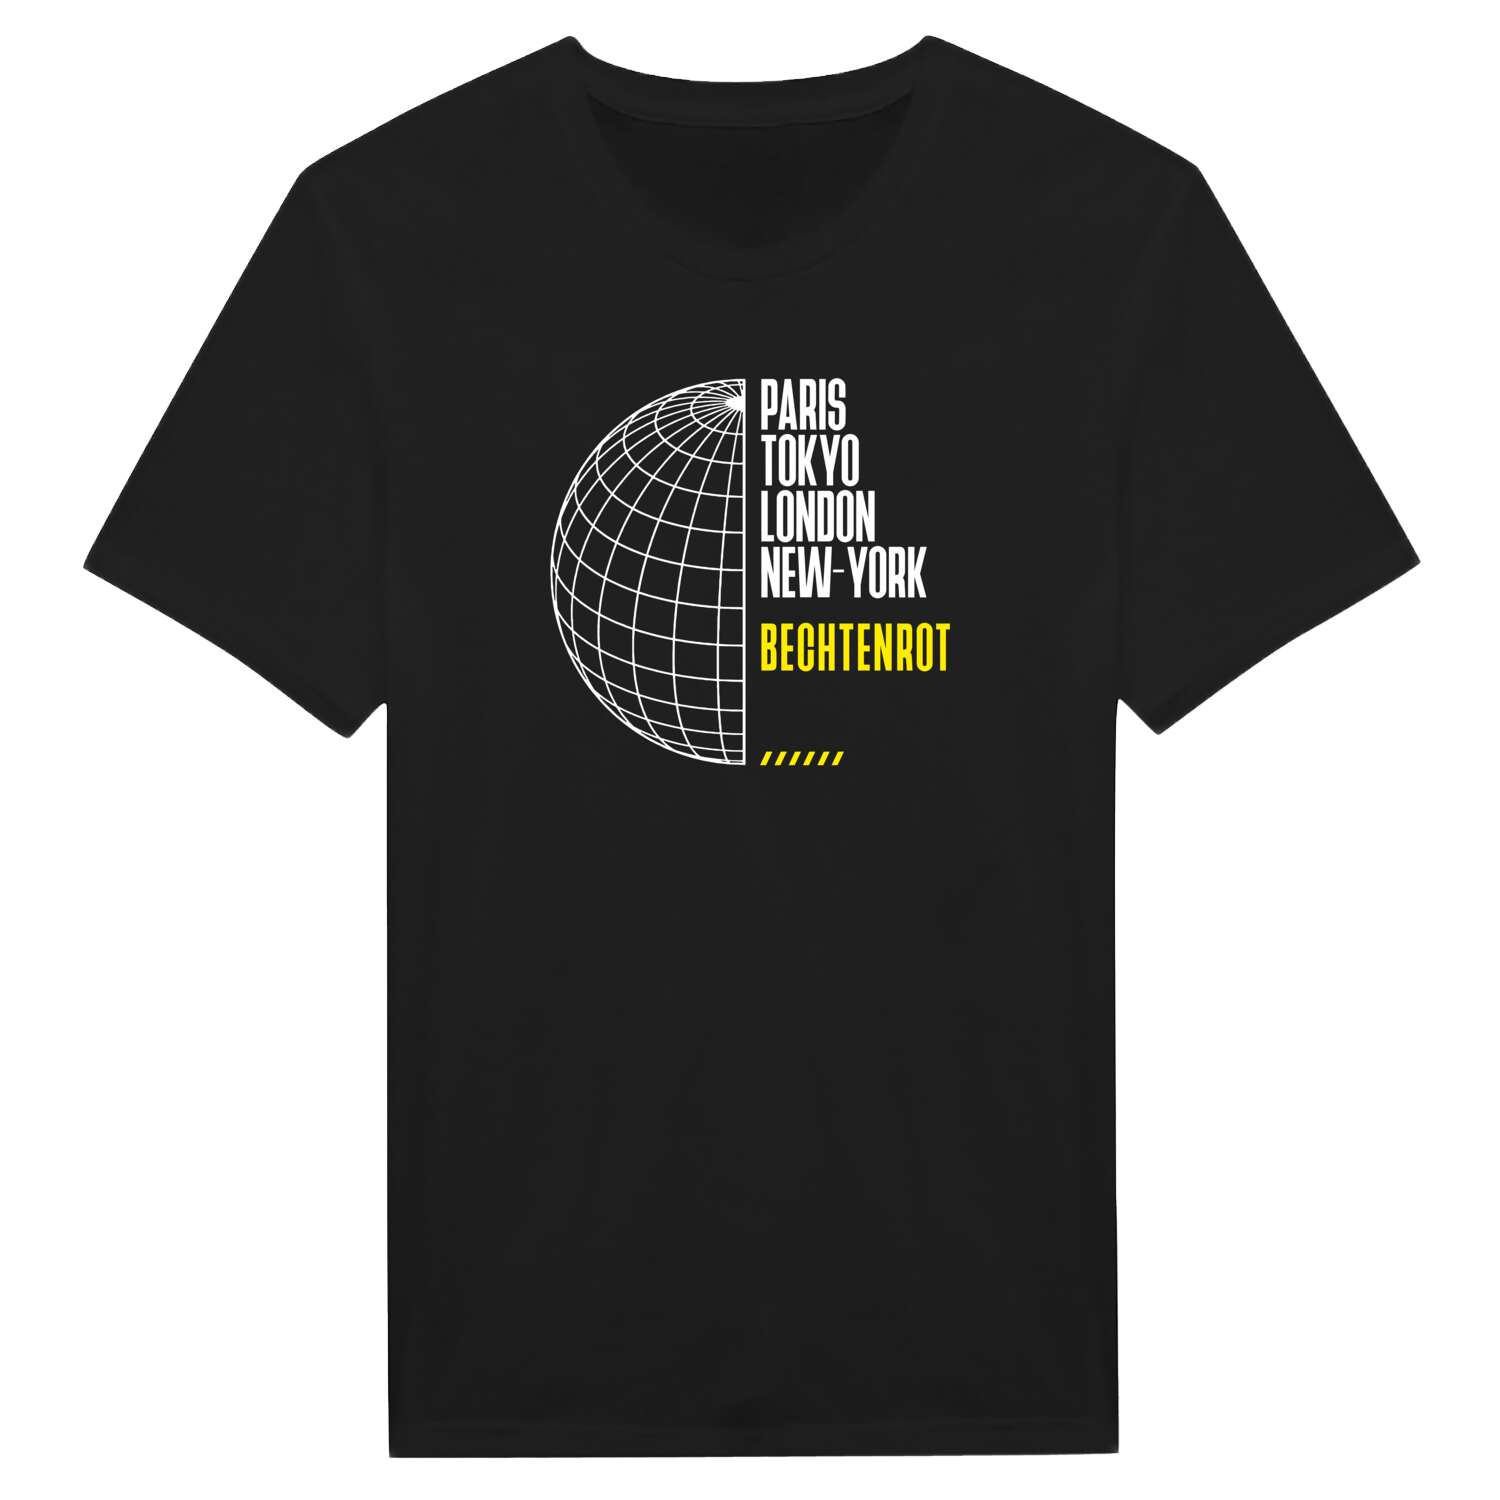 Bechtenrot T-Shirt »Paris Tokyo London«